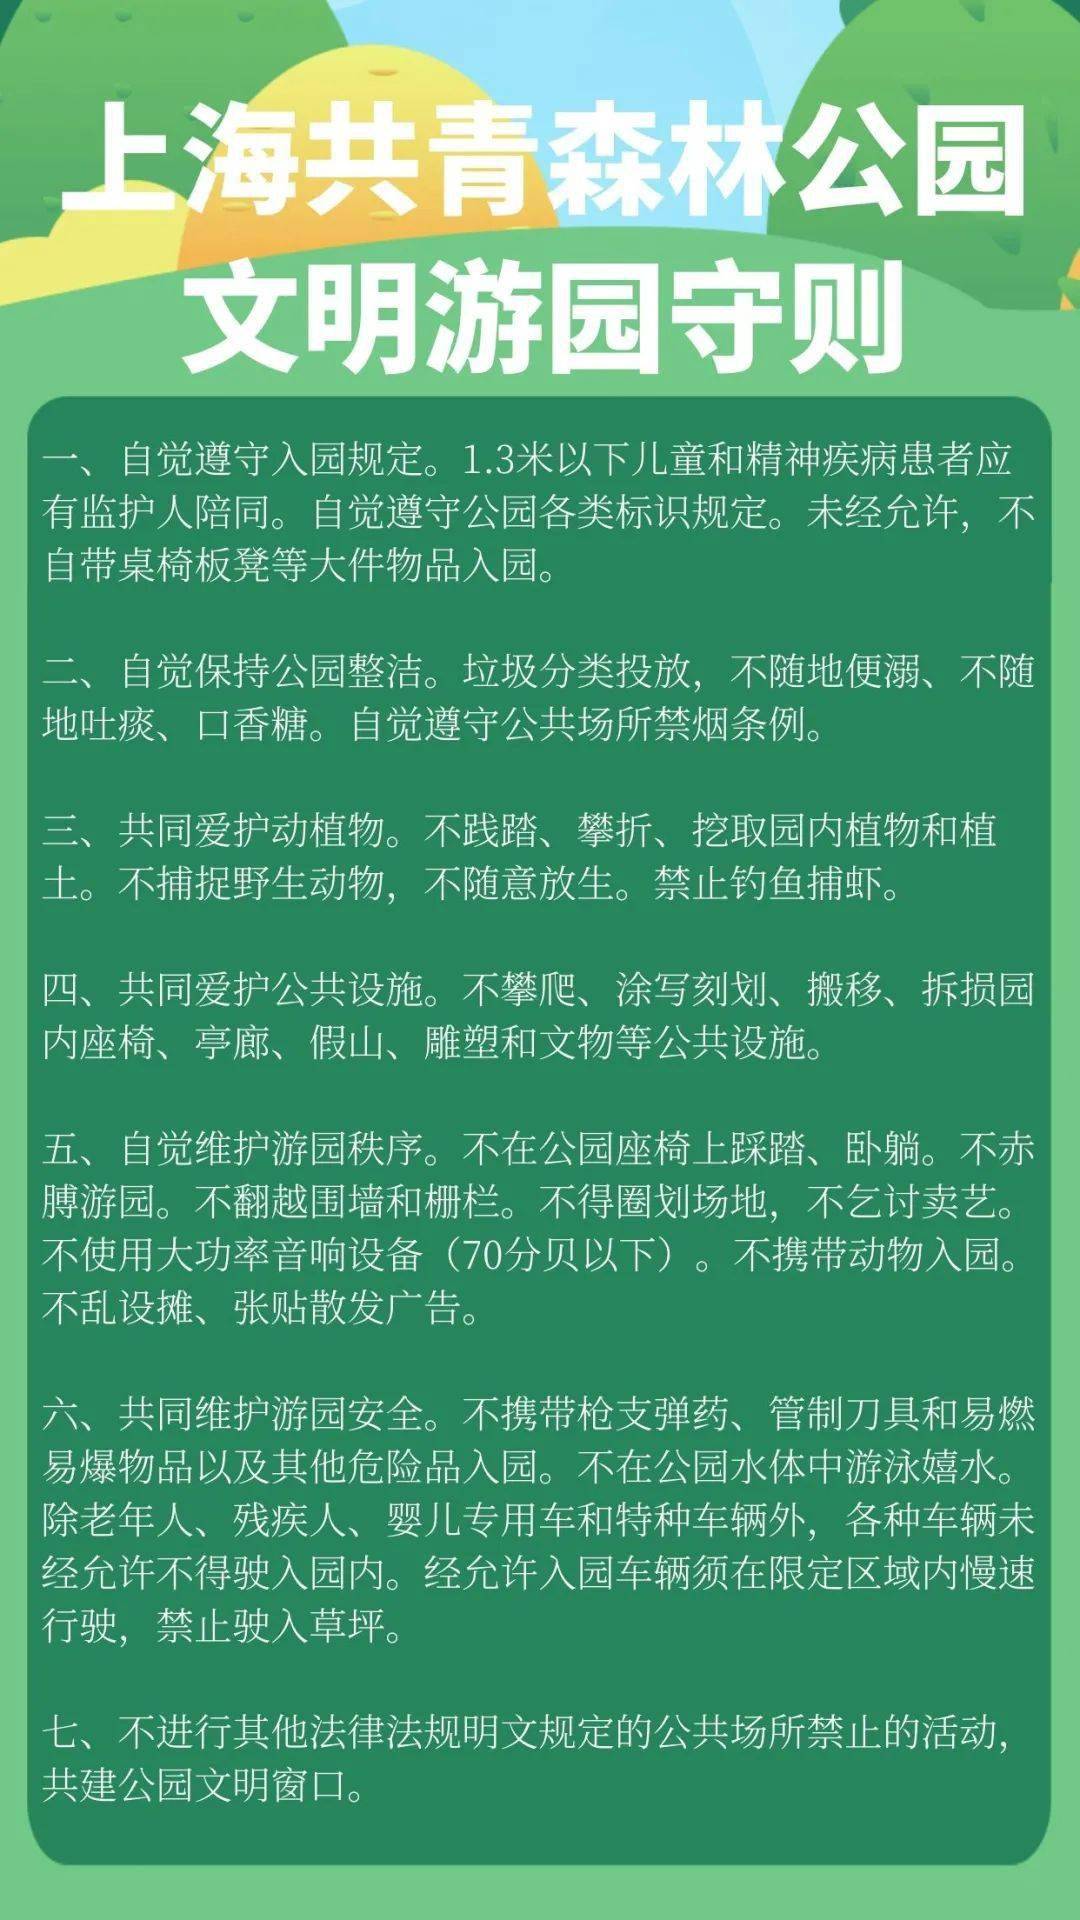 上海菊花展丨环保创意diy活动招募啦 年轮木片桥变杯垫 共青森林公园